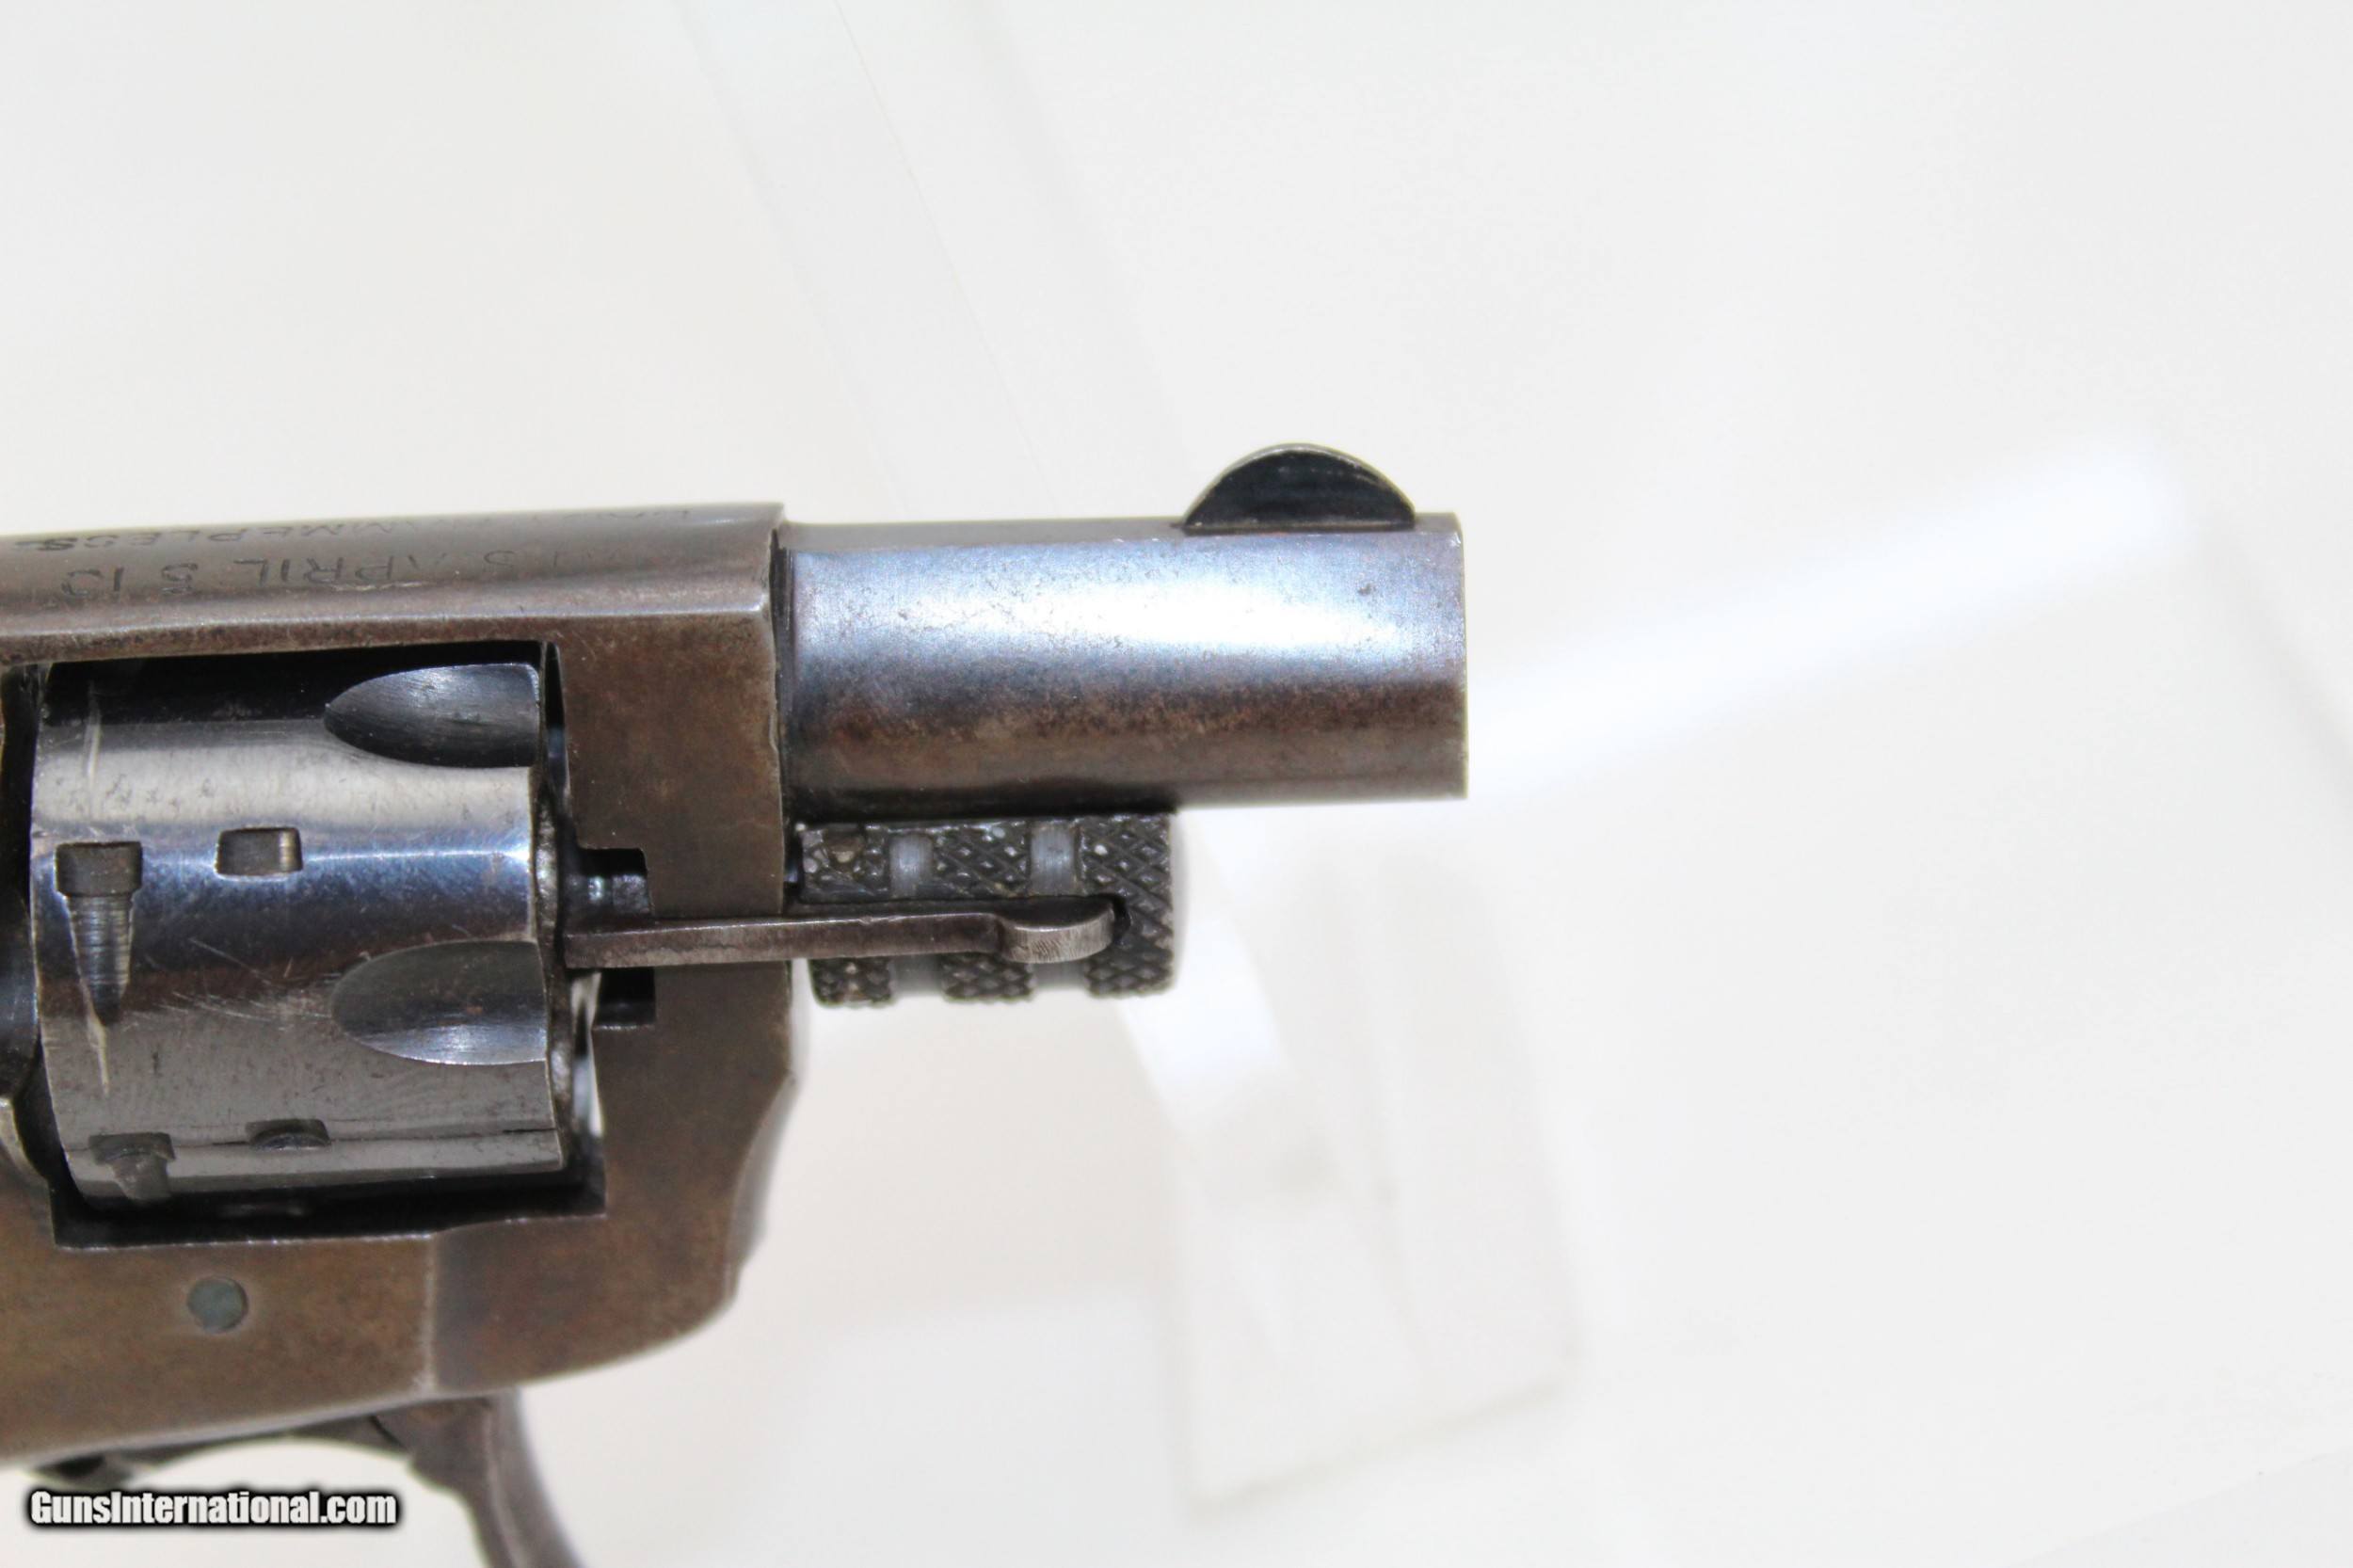 Kolb-Sedgley “BABY HAMMERLESS” .22 Short Revolver